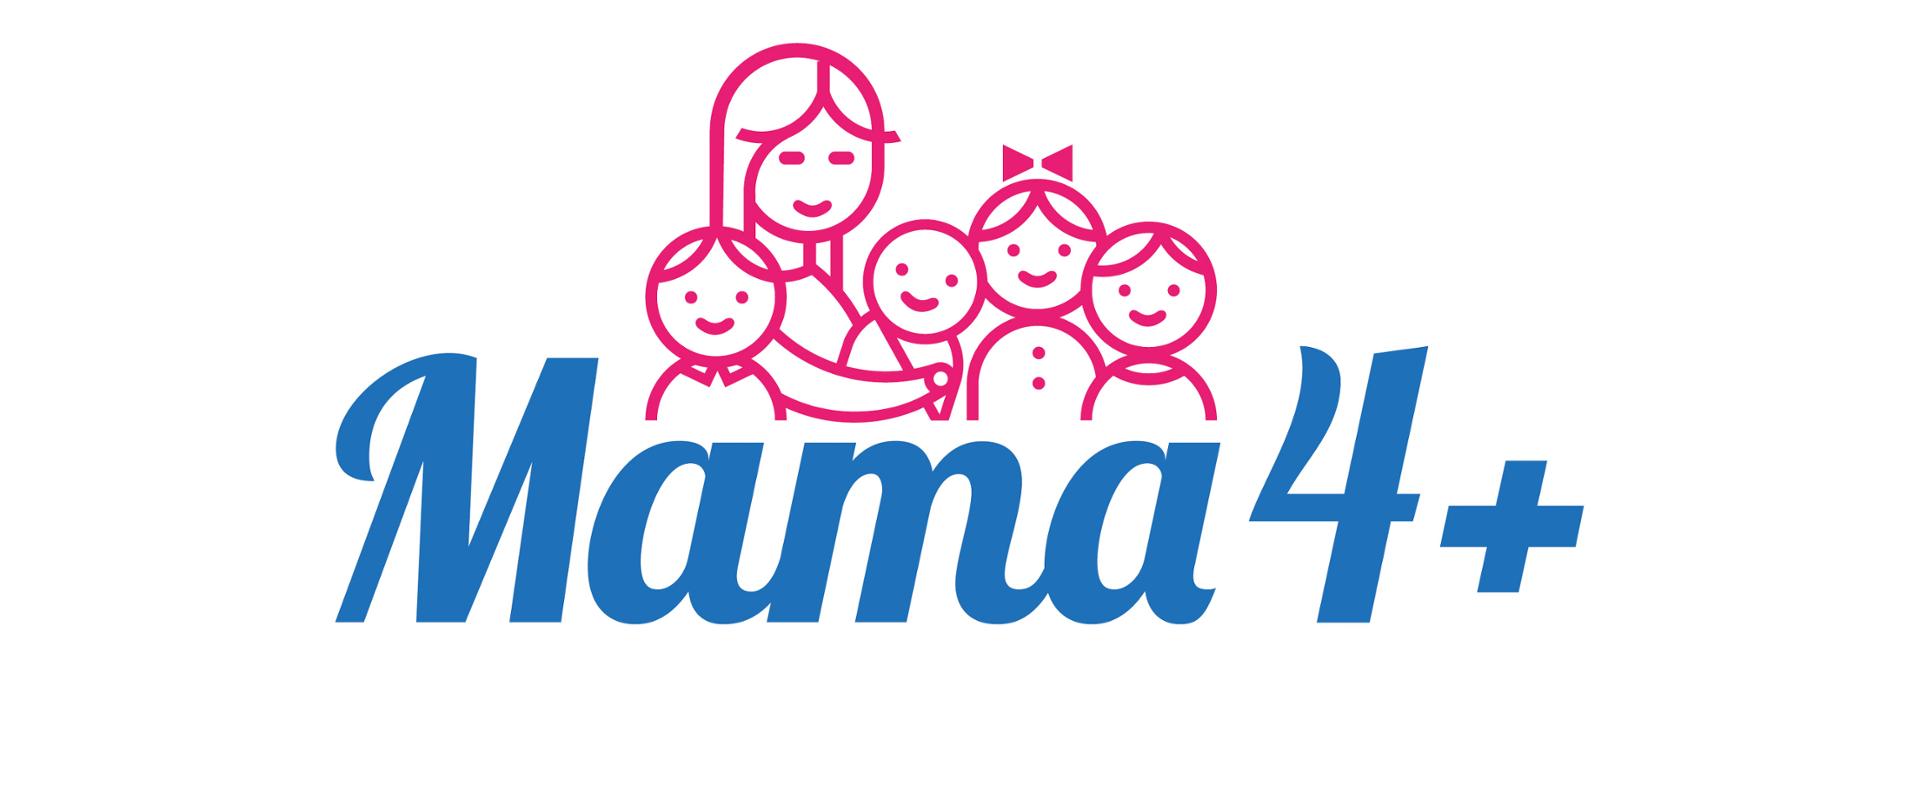 Mama 4+ logo